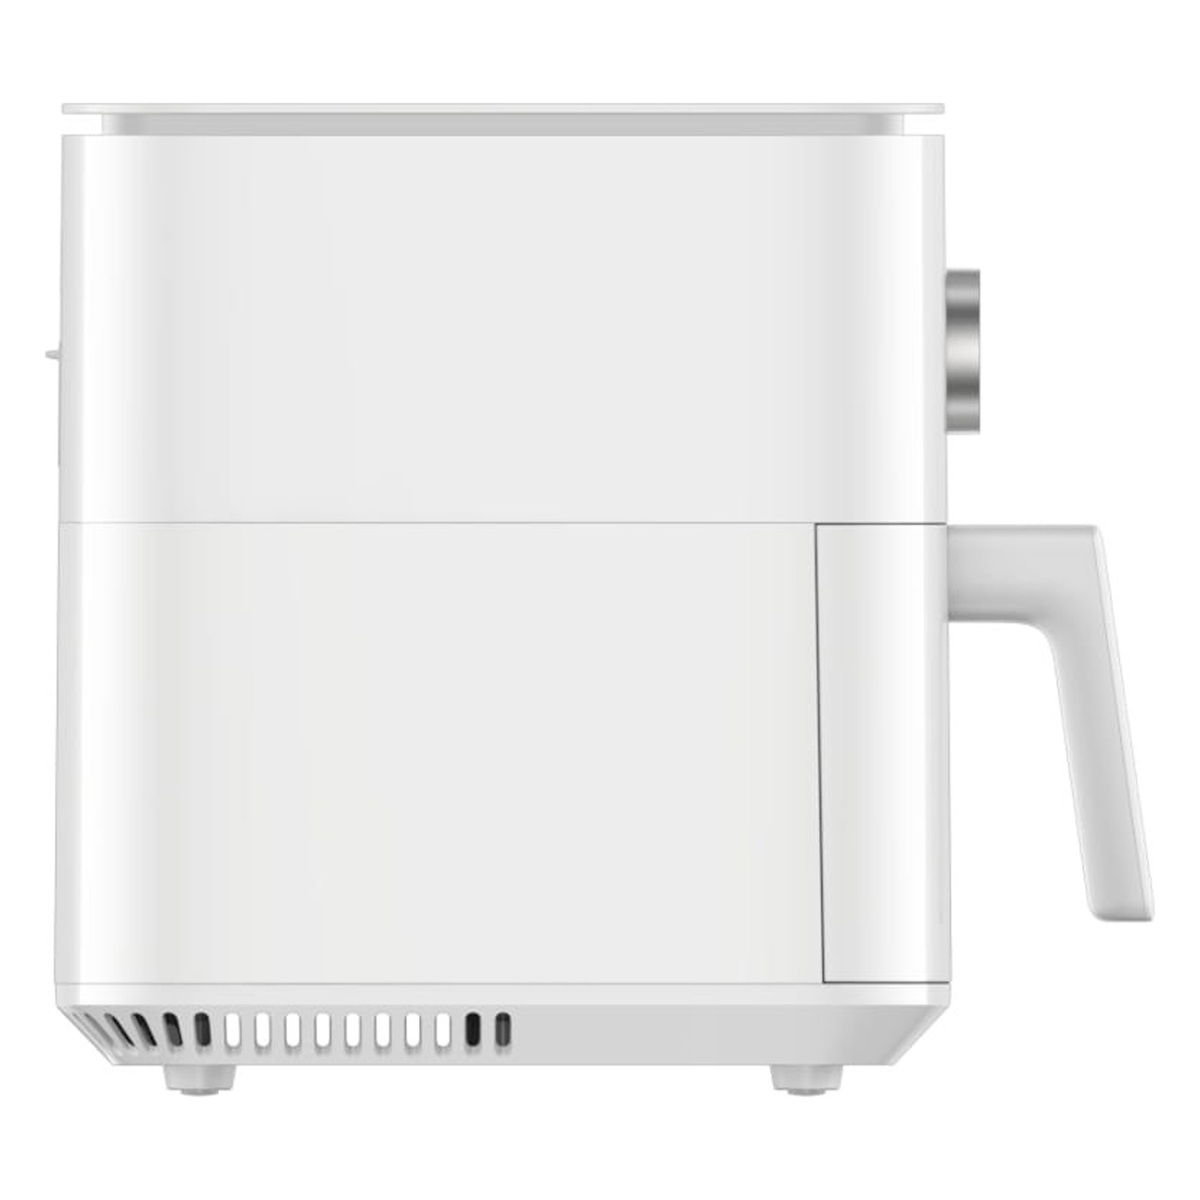 MI Smart Air Fryer, 6.5 L, 1800 W, White, BHR7358EU